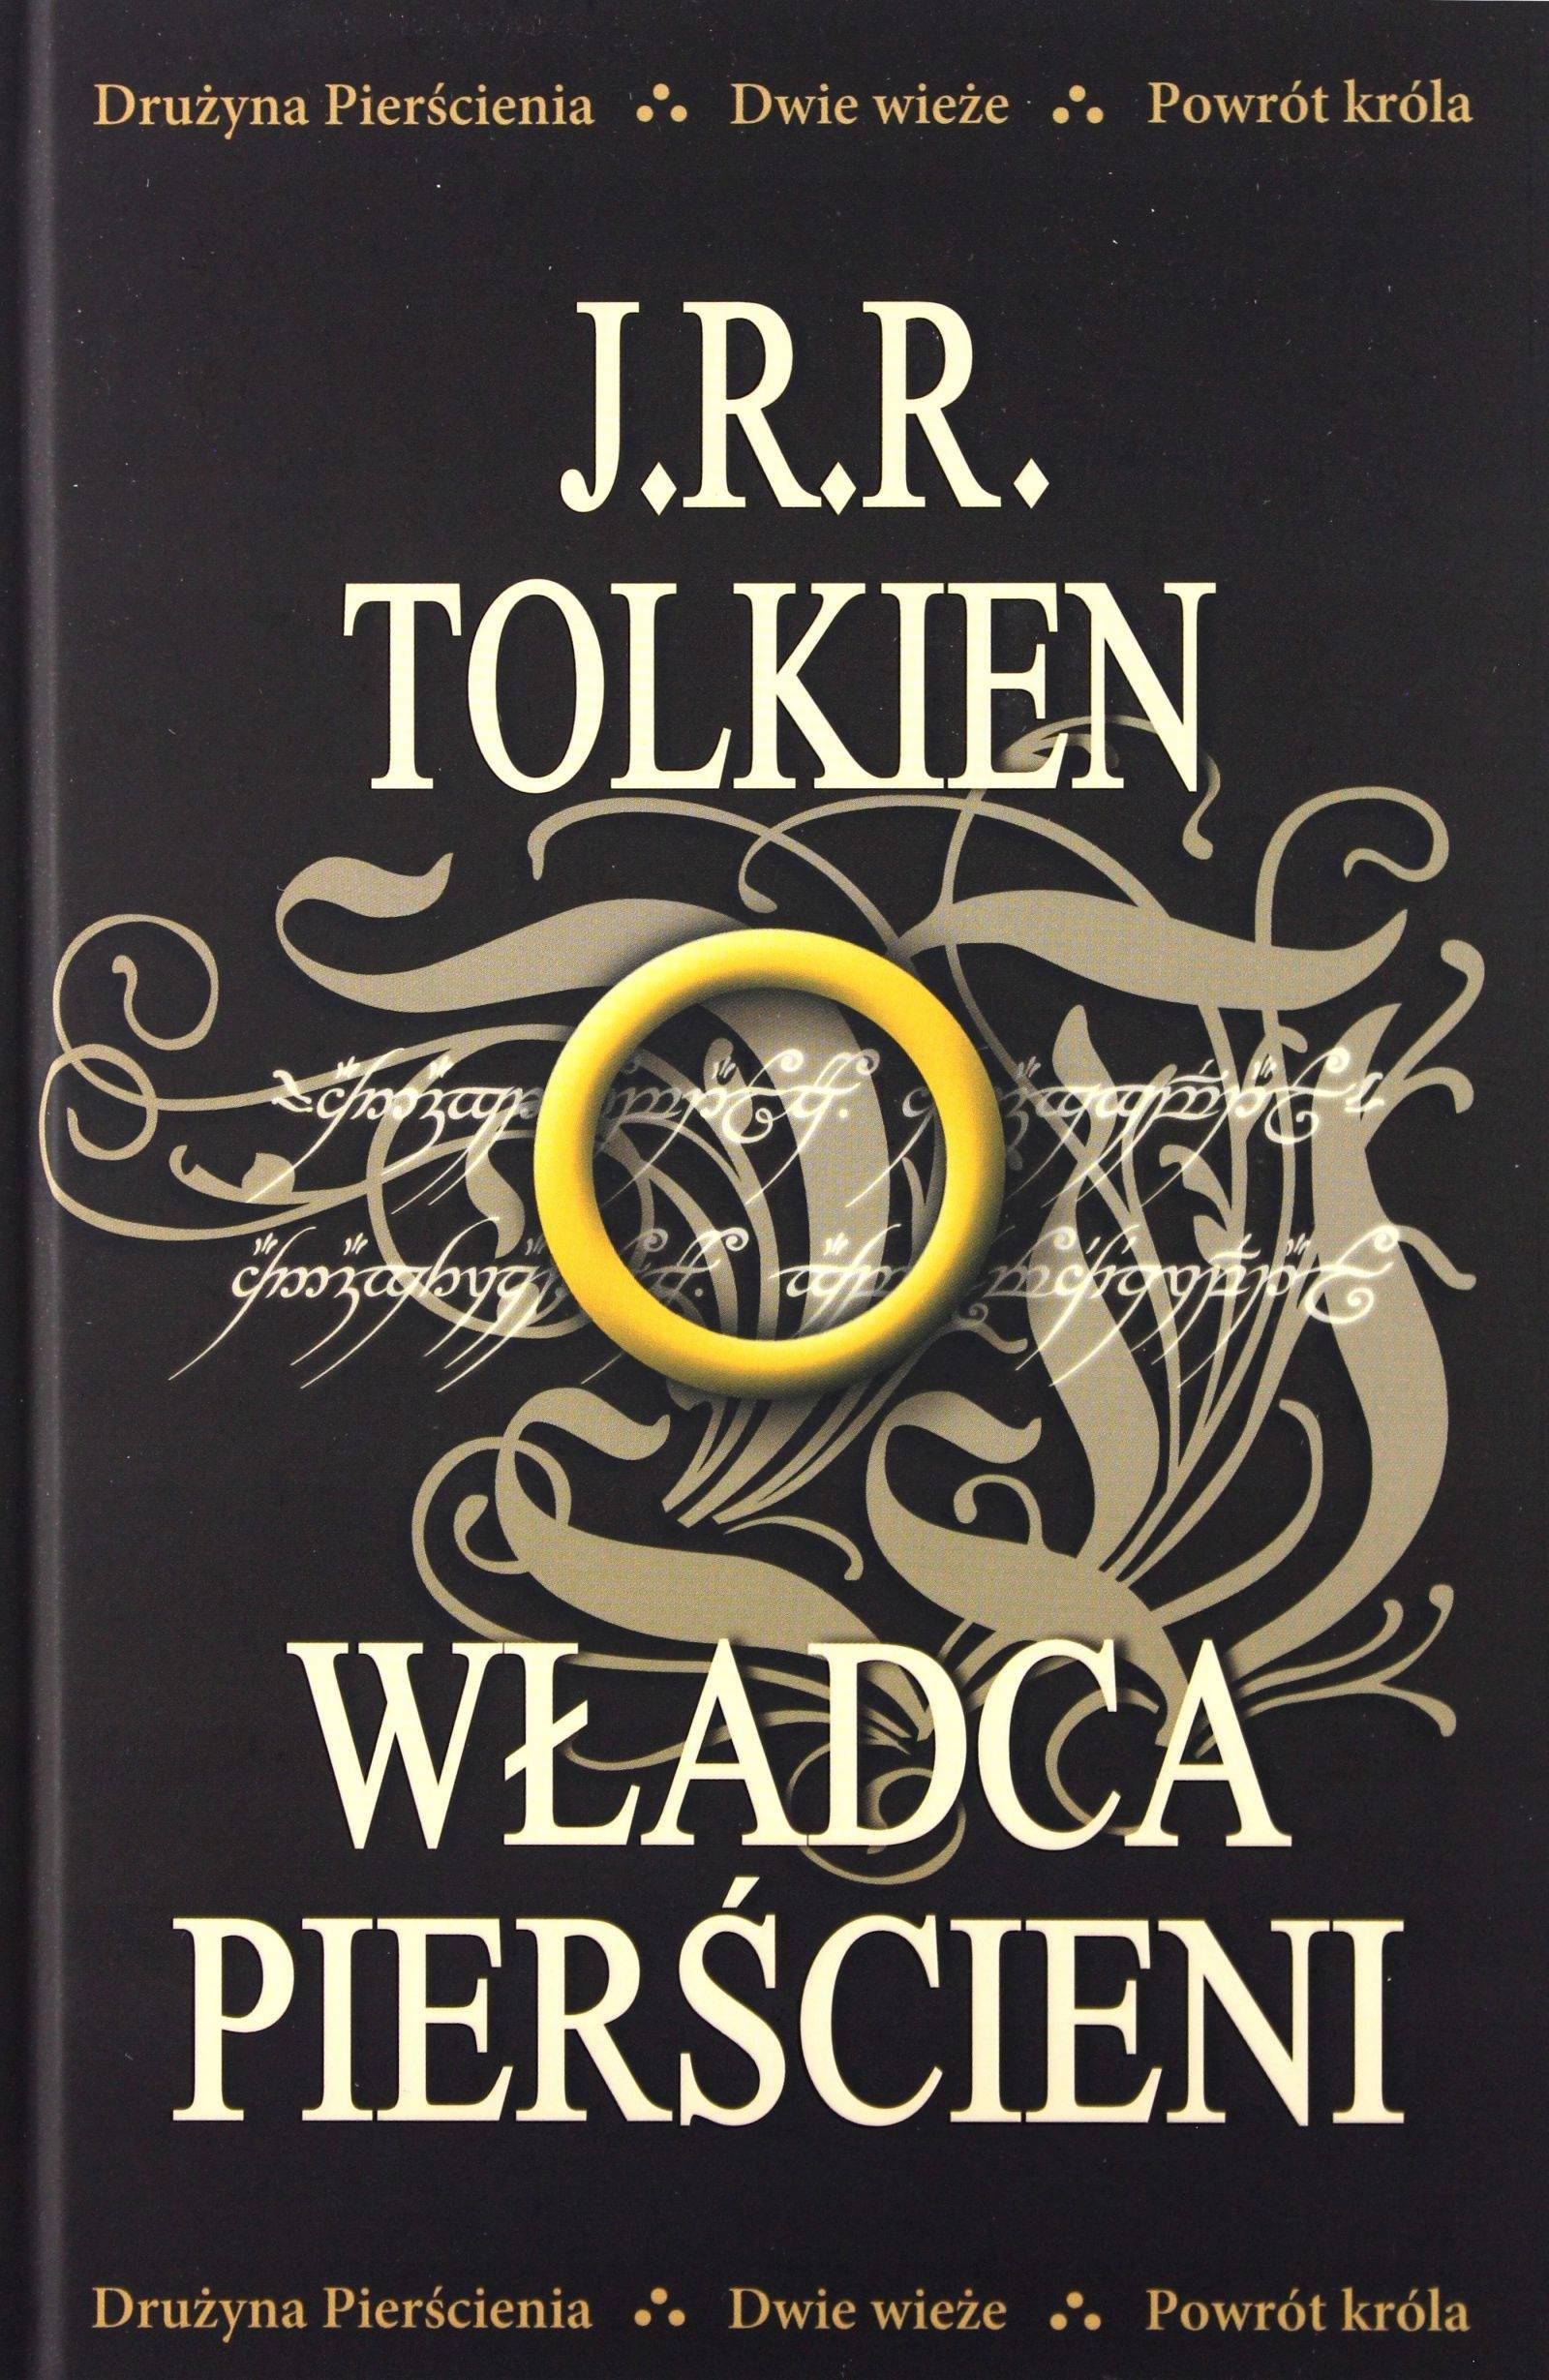 J.R.R.Tolkien, „Władca Pierścieni” (Fot. Materiały prasowe)